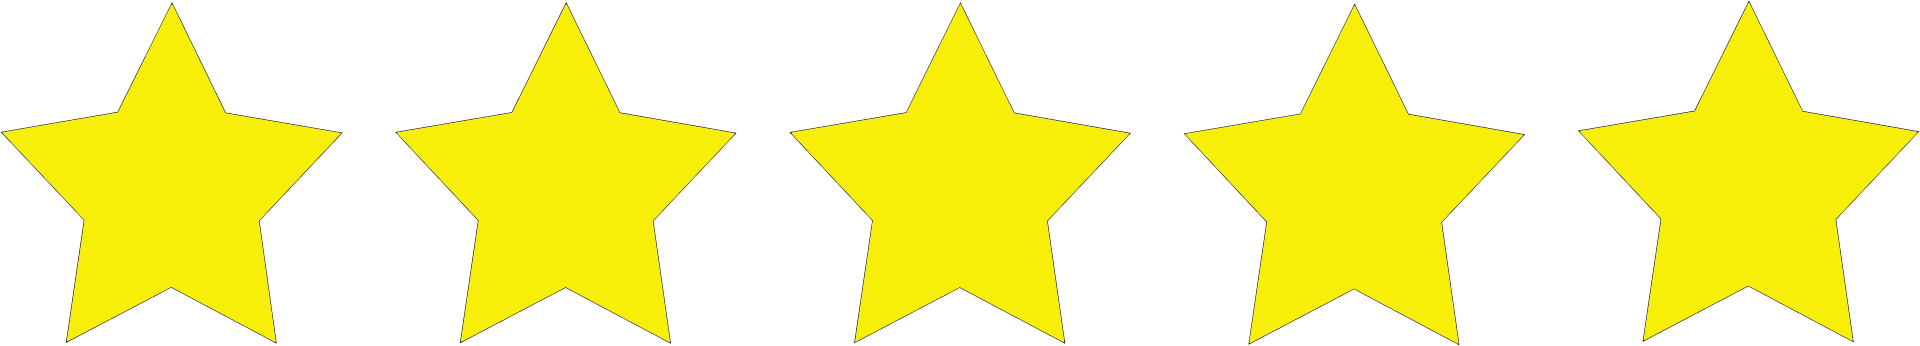 5 Звезд. Пять звезд картинка. 5 Звезд вектор. 5 Звезд PNG. Звезда пятерка